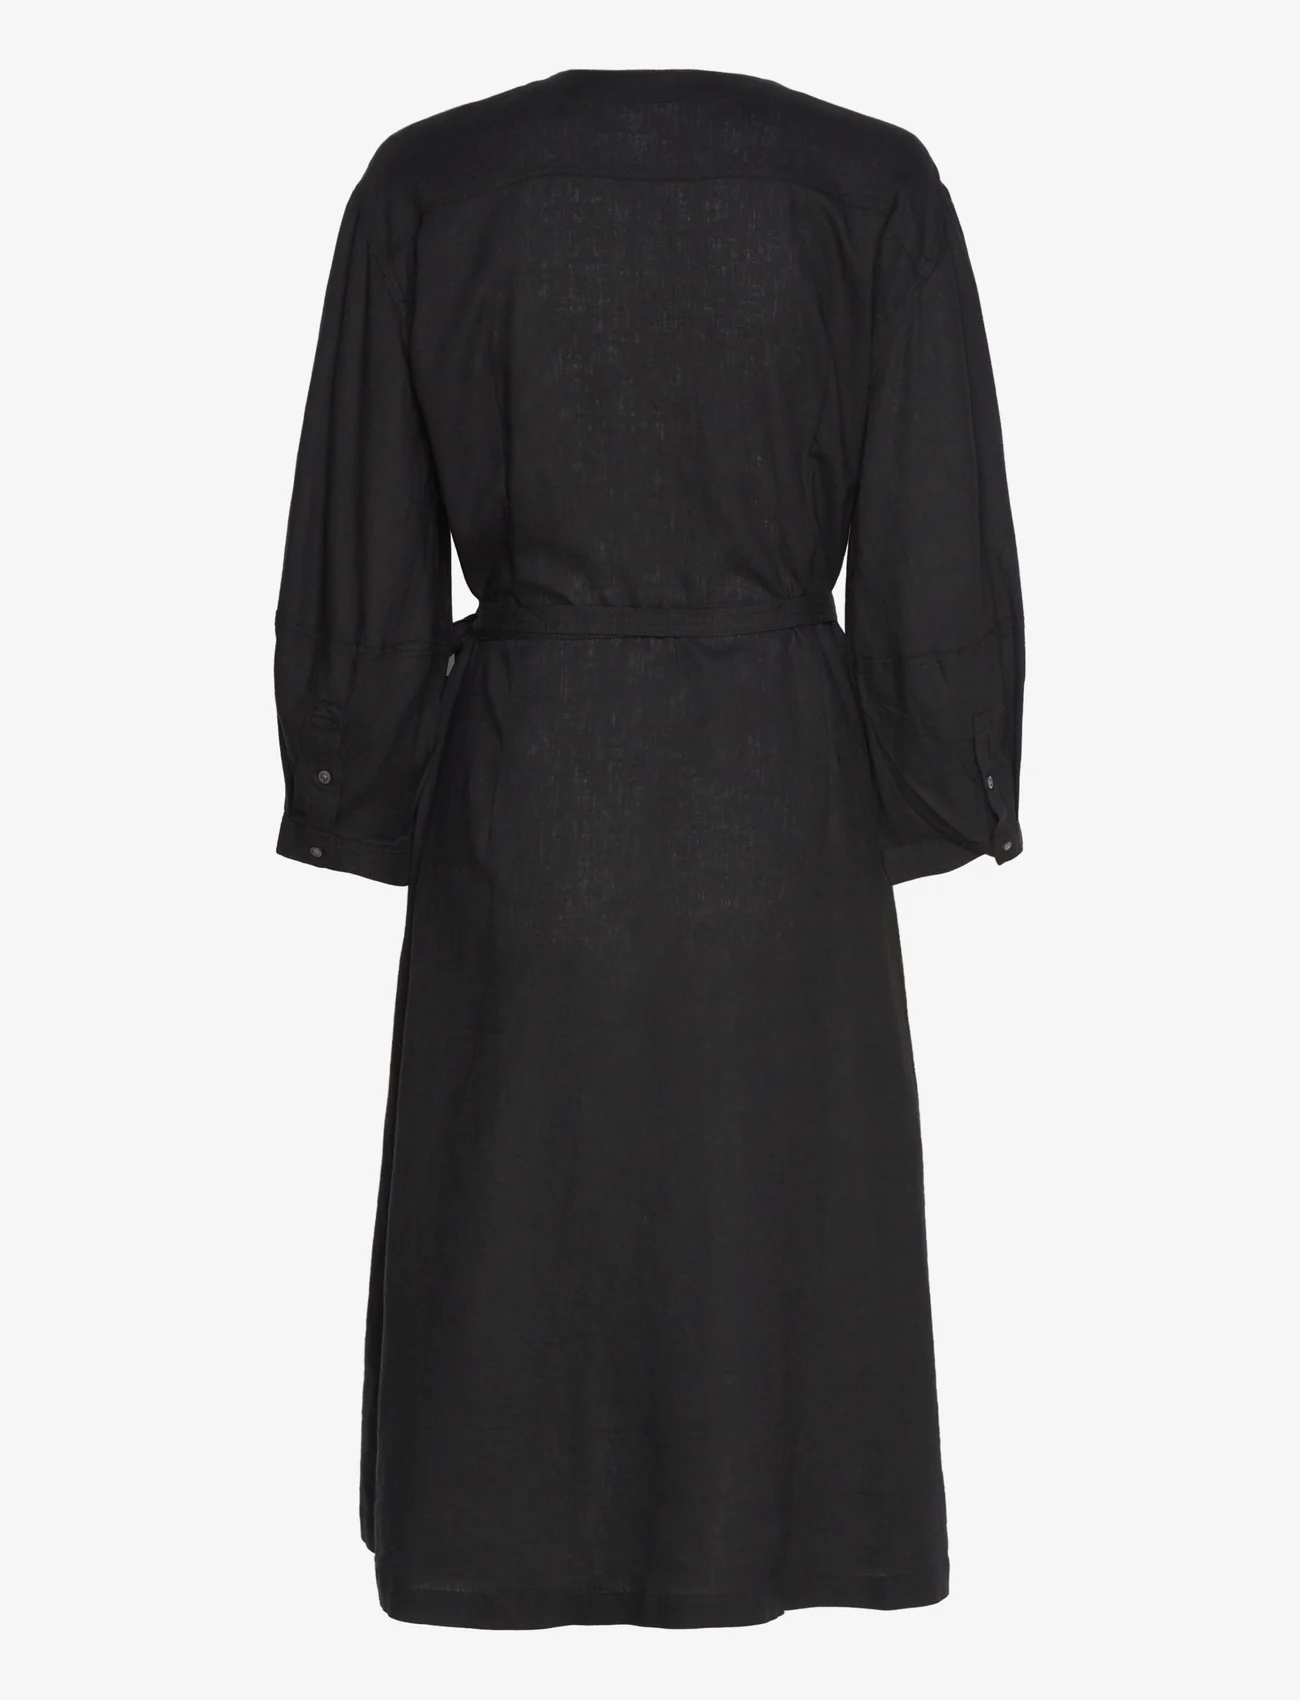 InWear - AmosIW Dress - wickelkleider - black - 1